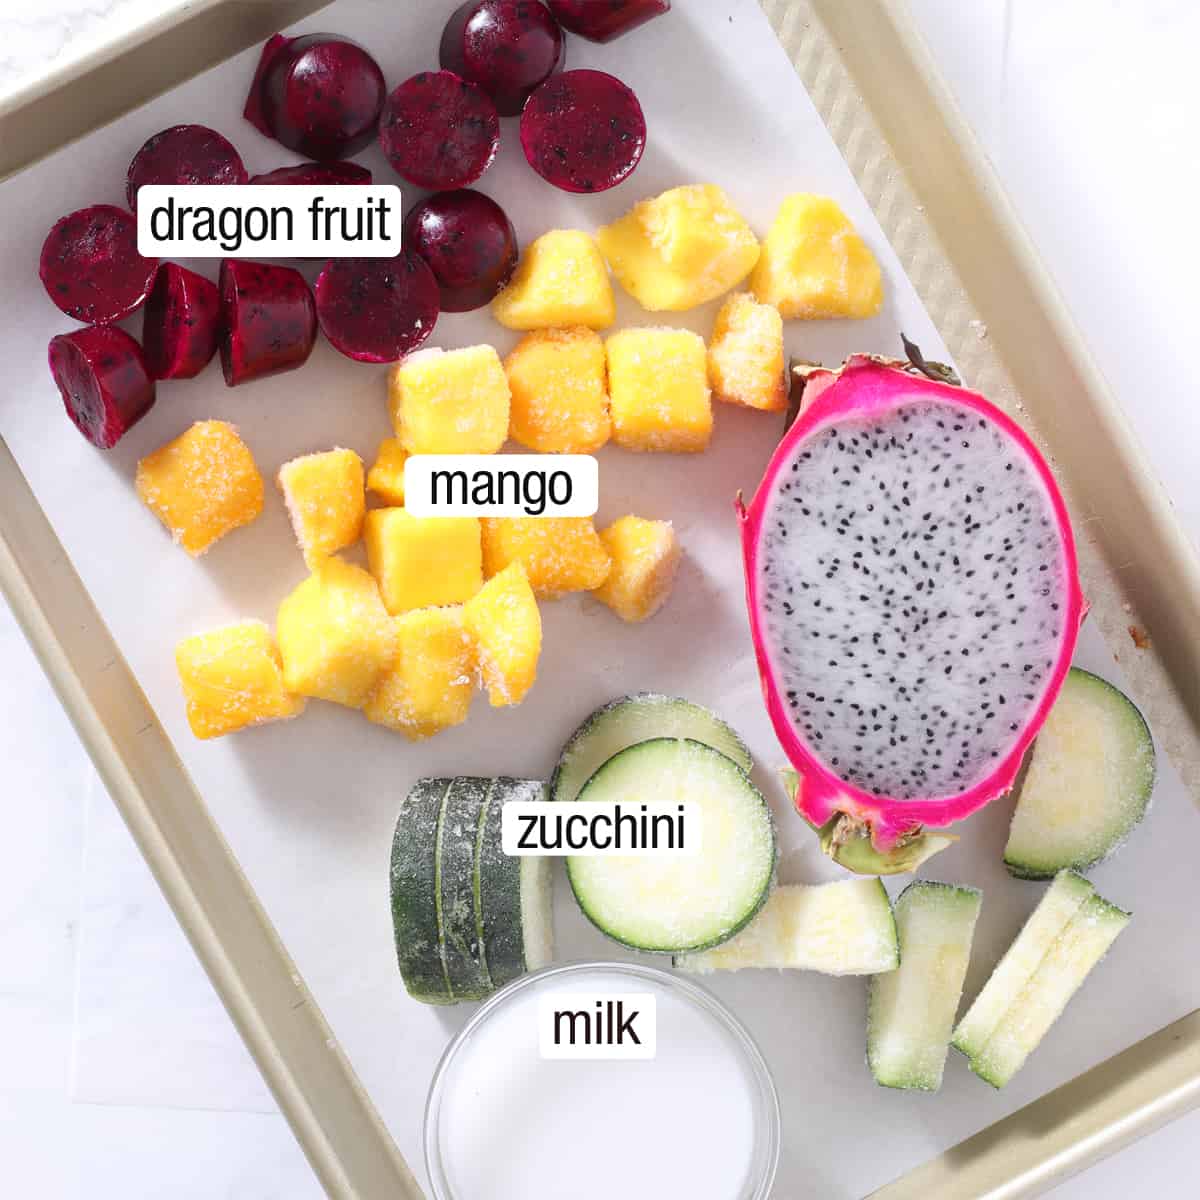 ingredients to make a pitaya bowl